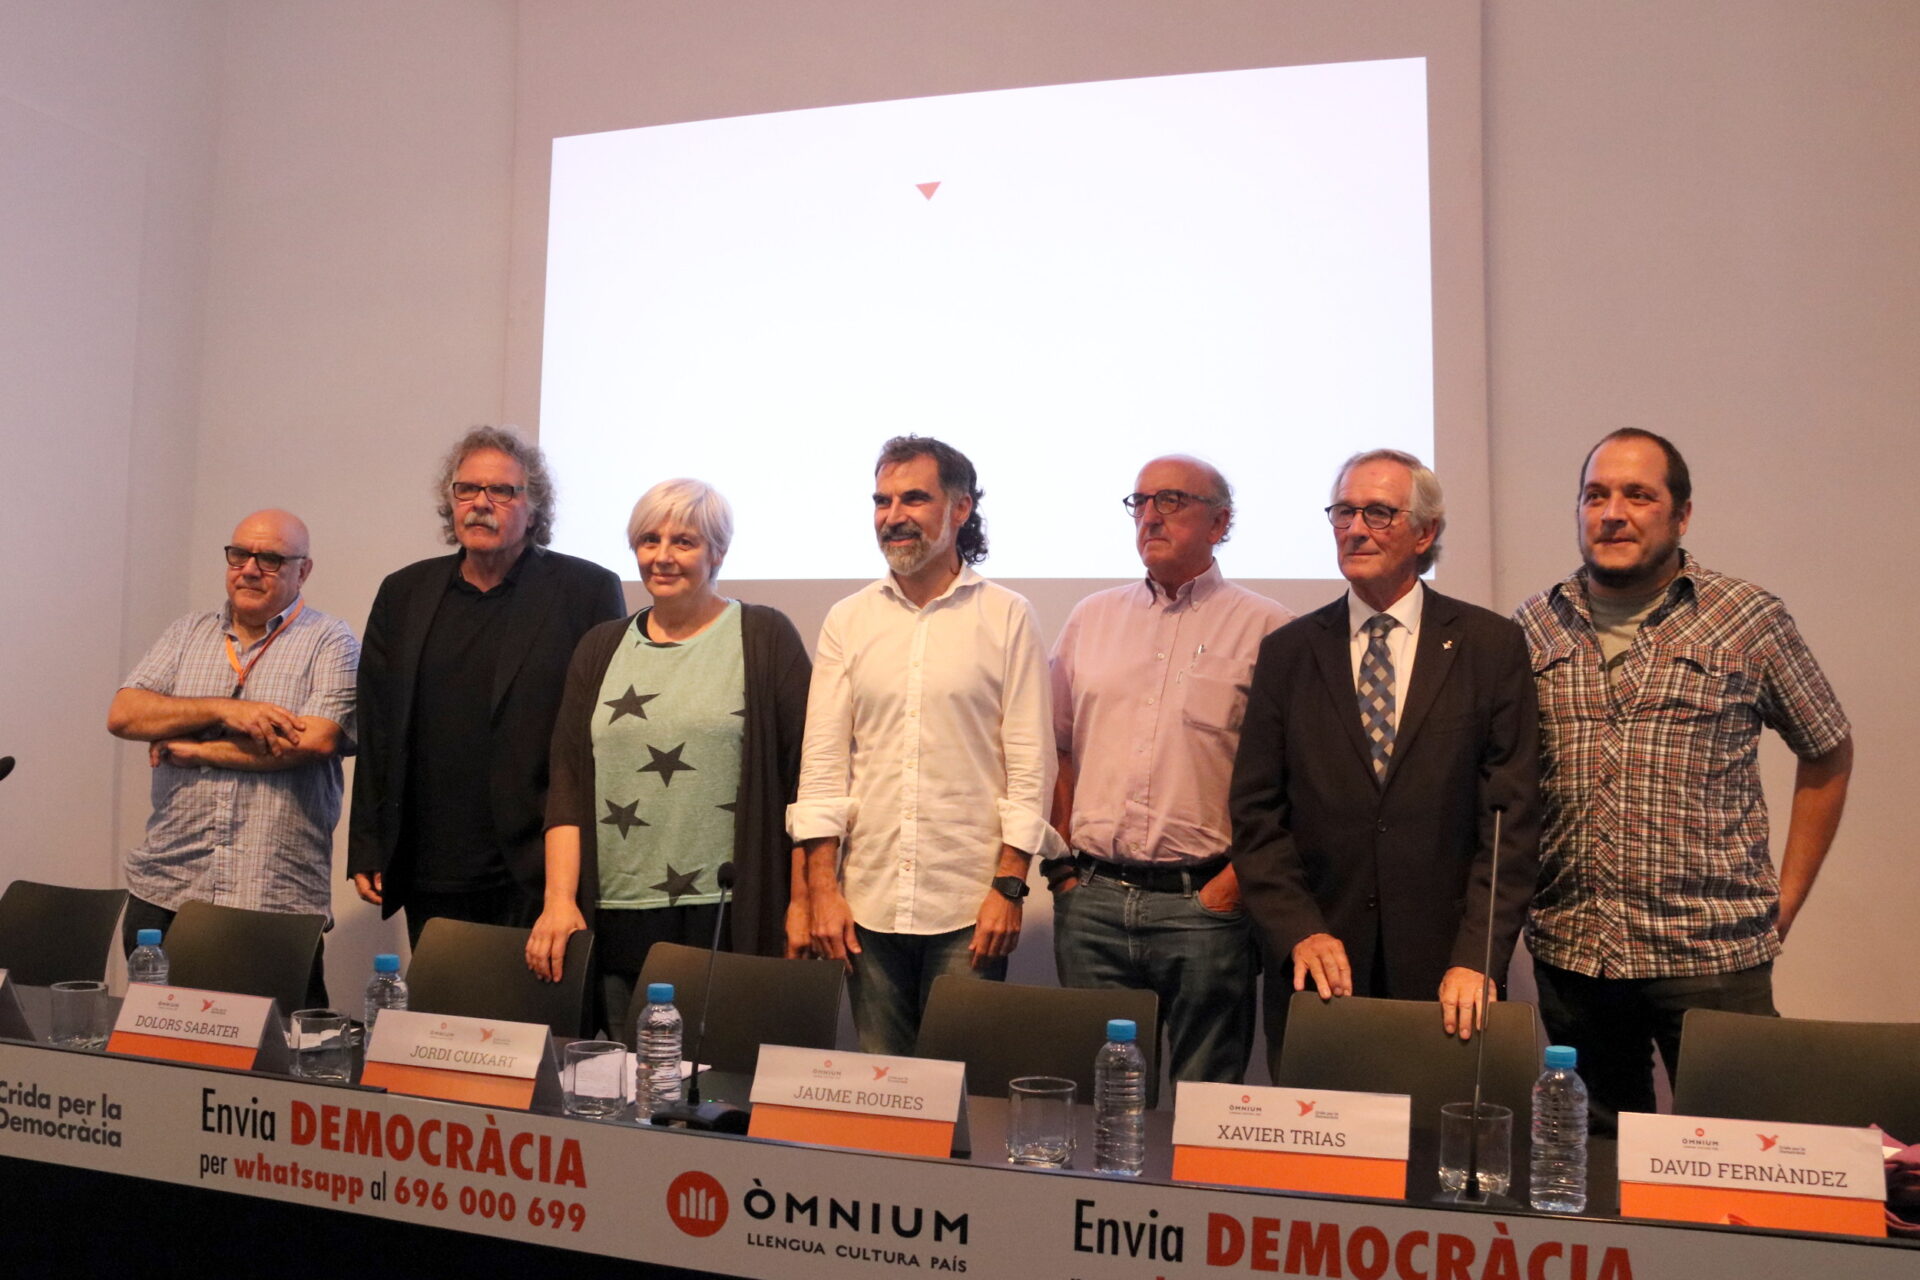 Entrenats per a lluitar, el lloc dels comuns i el 696 000 699: crida per la democràcia d’Òmnium